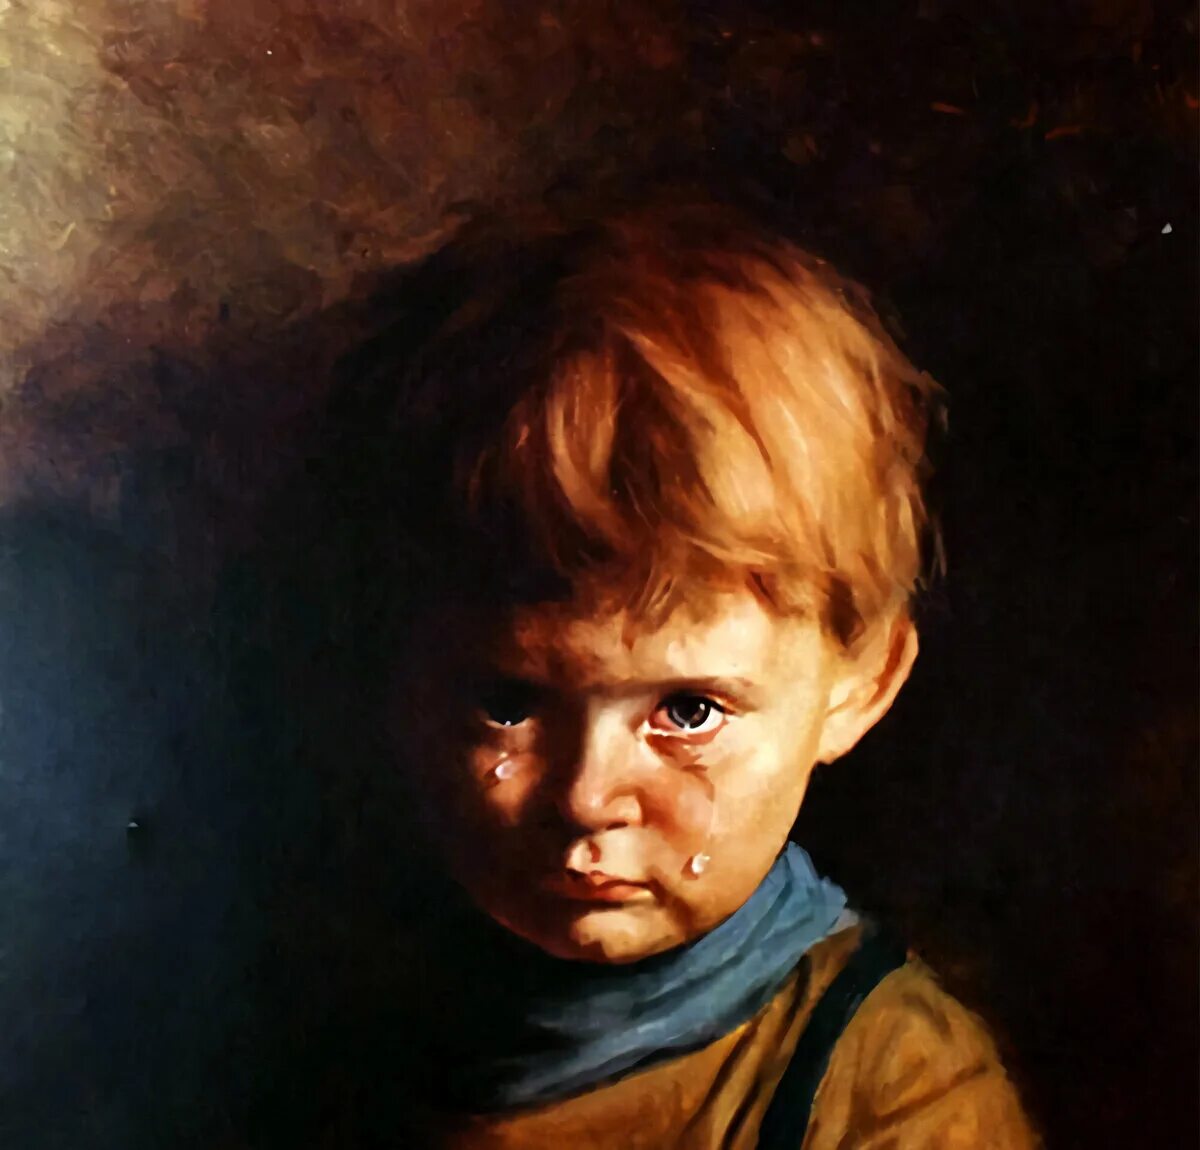 Какая картина считается проклятой. Джованни Браголин Плачущий мальчик. Картина Плачущий мальчик Джованни Браголина. Джованни Браголин Плачущий мальчик картины художников Италии.